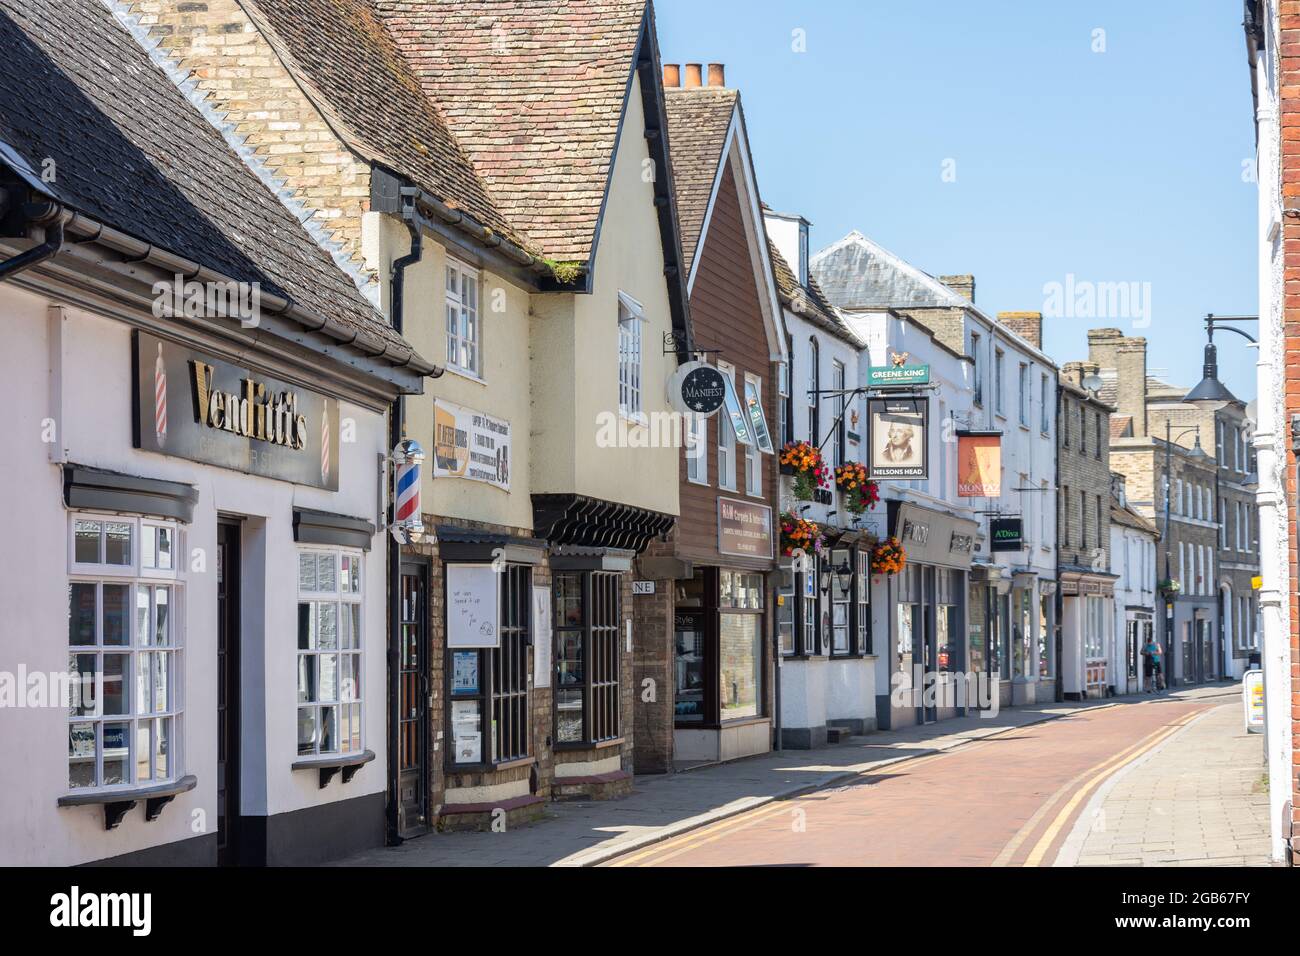 Merryland, St Ives, Cambridgeshire, England, United Kingdom Stock Photo -  Alamy